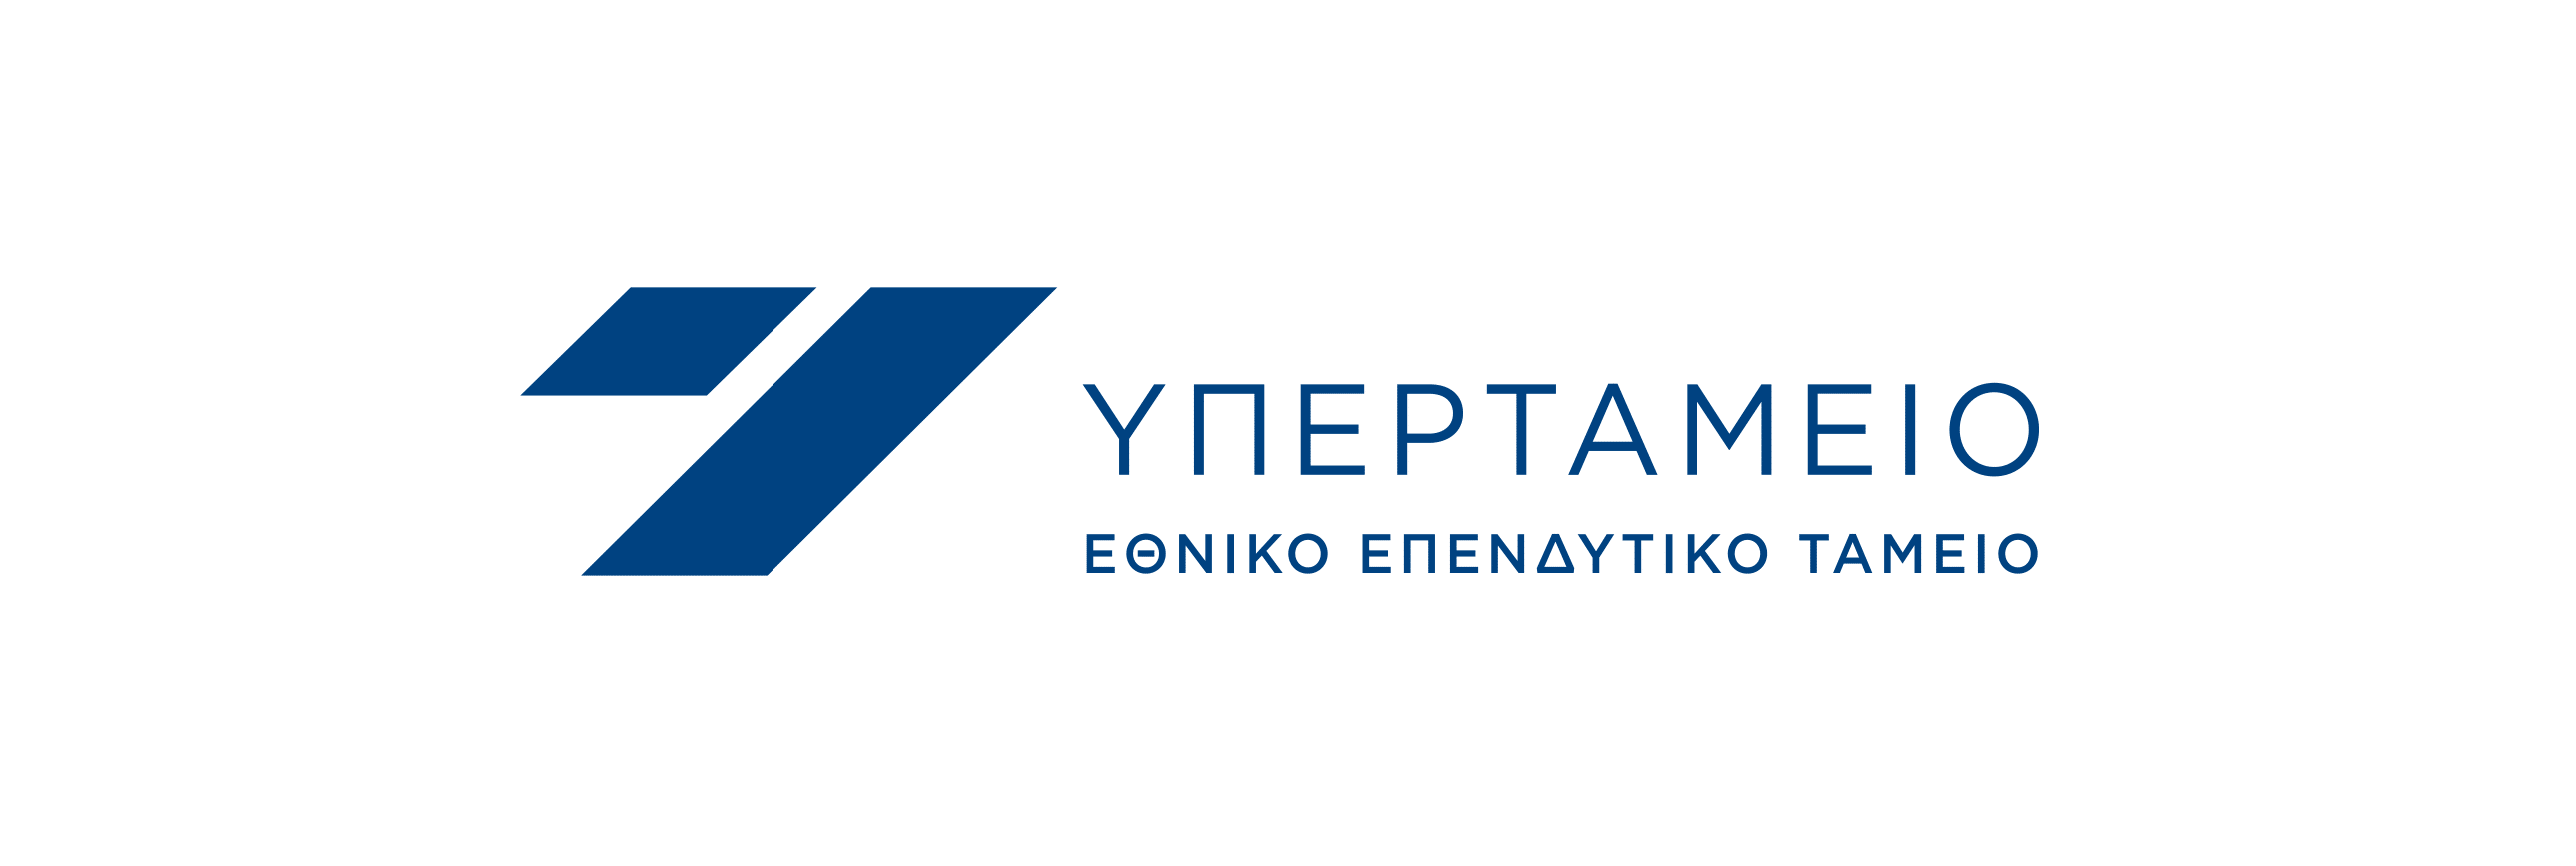 Ελληνικη εταιρια